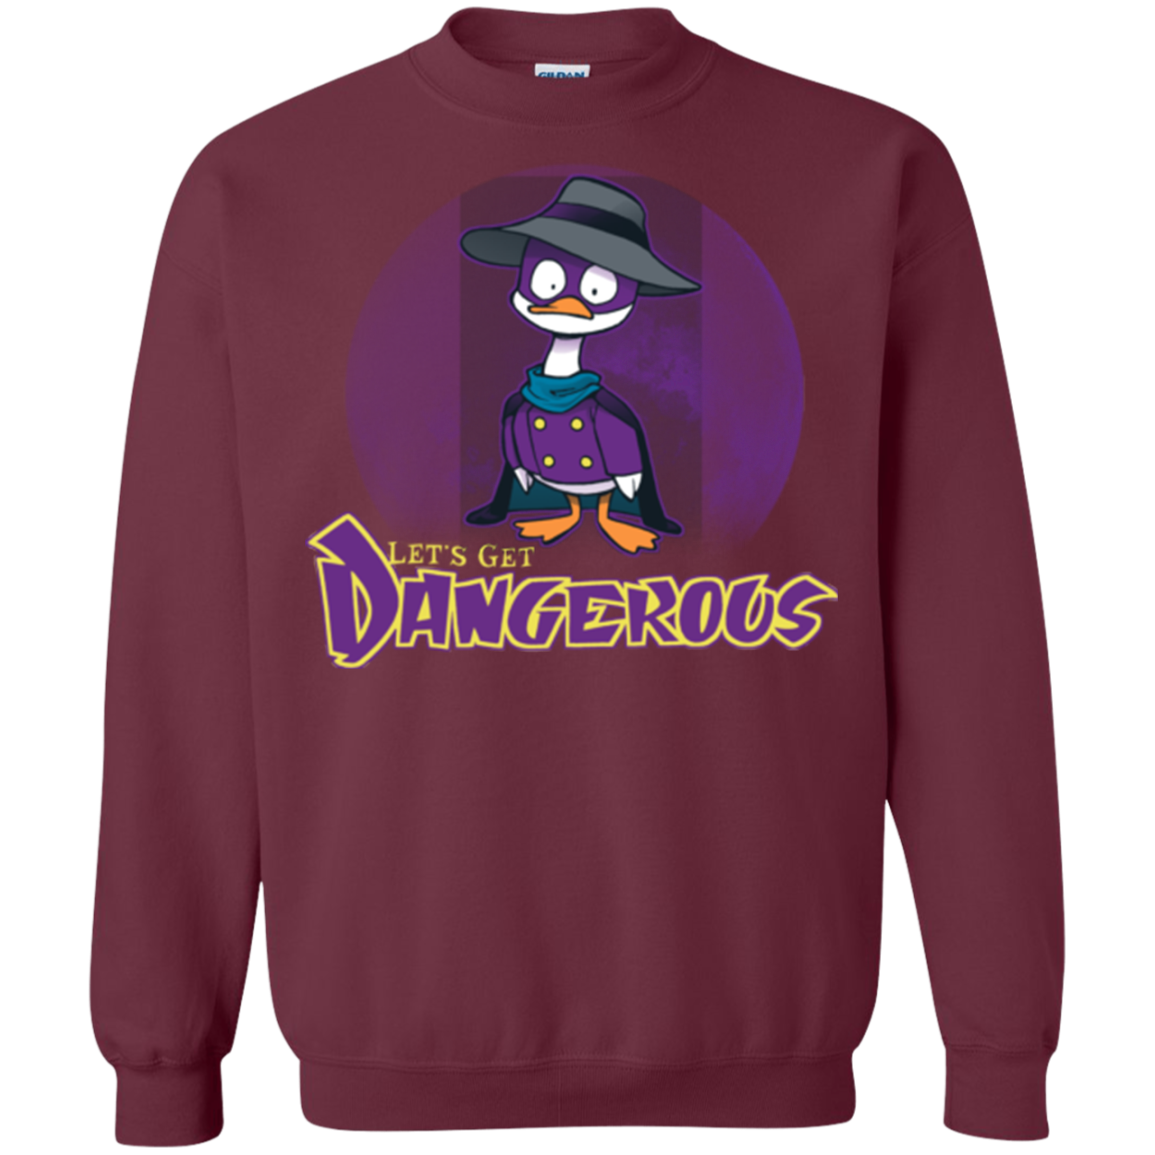 DW Duck Crewneck Sweatshirt